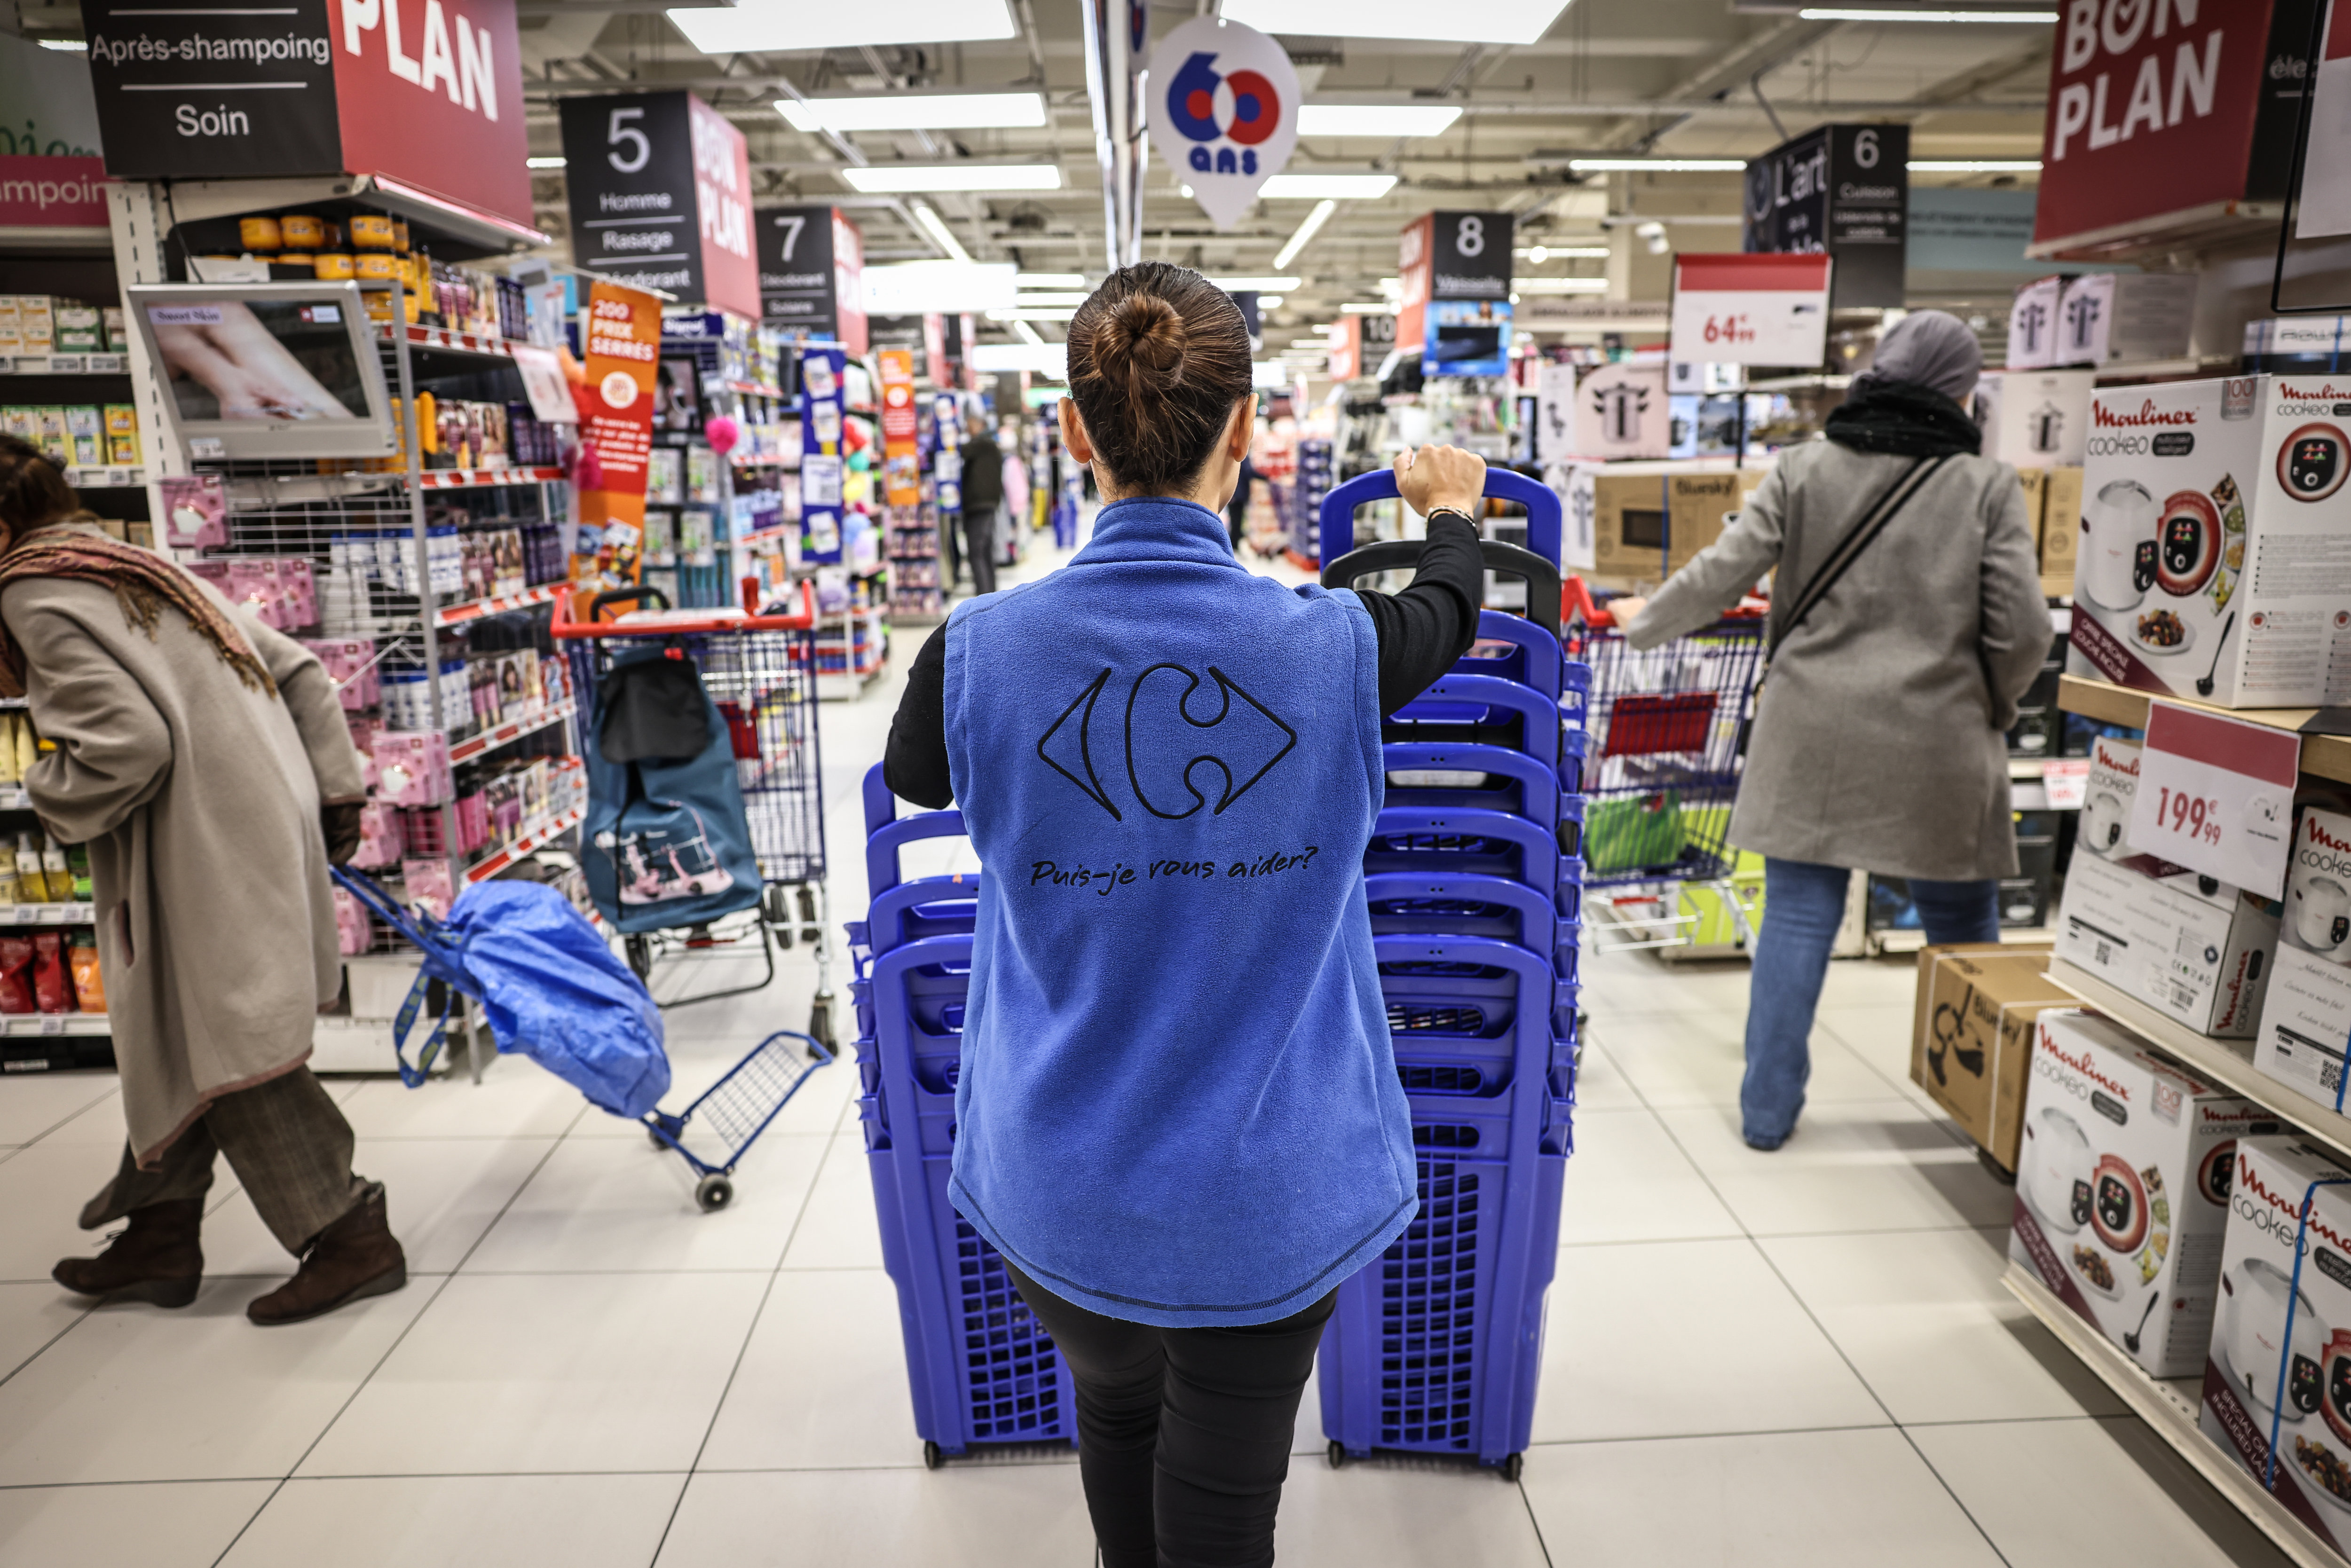 Le distributeur Carrefour envisage la suppression de près de 1.000 postes dans ses sièges en France. LP / Fred Dugit